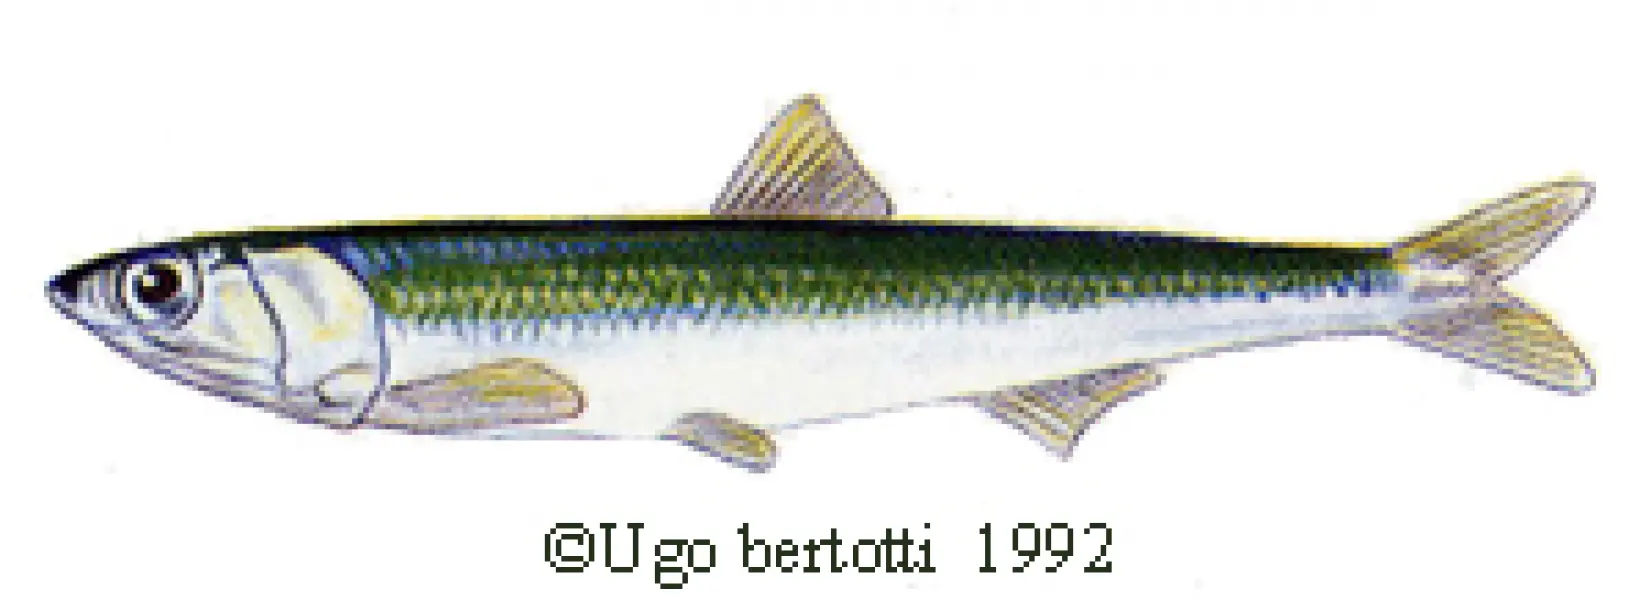 Ugo Bertotti. Acciuga. 1992. illustrazione jpg tratta da disegno ad acquarello e matite colorate.